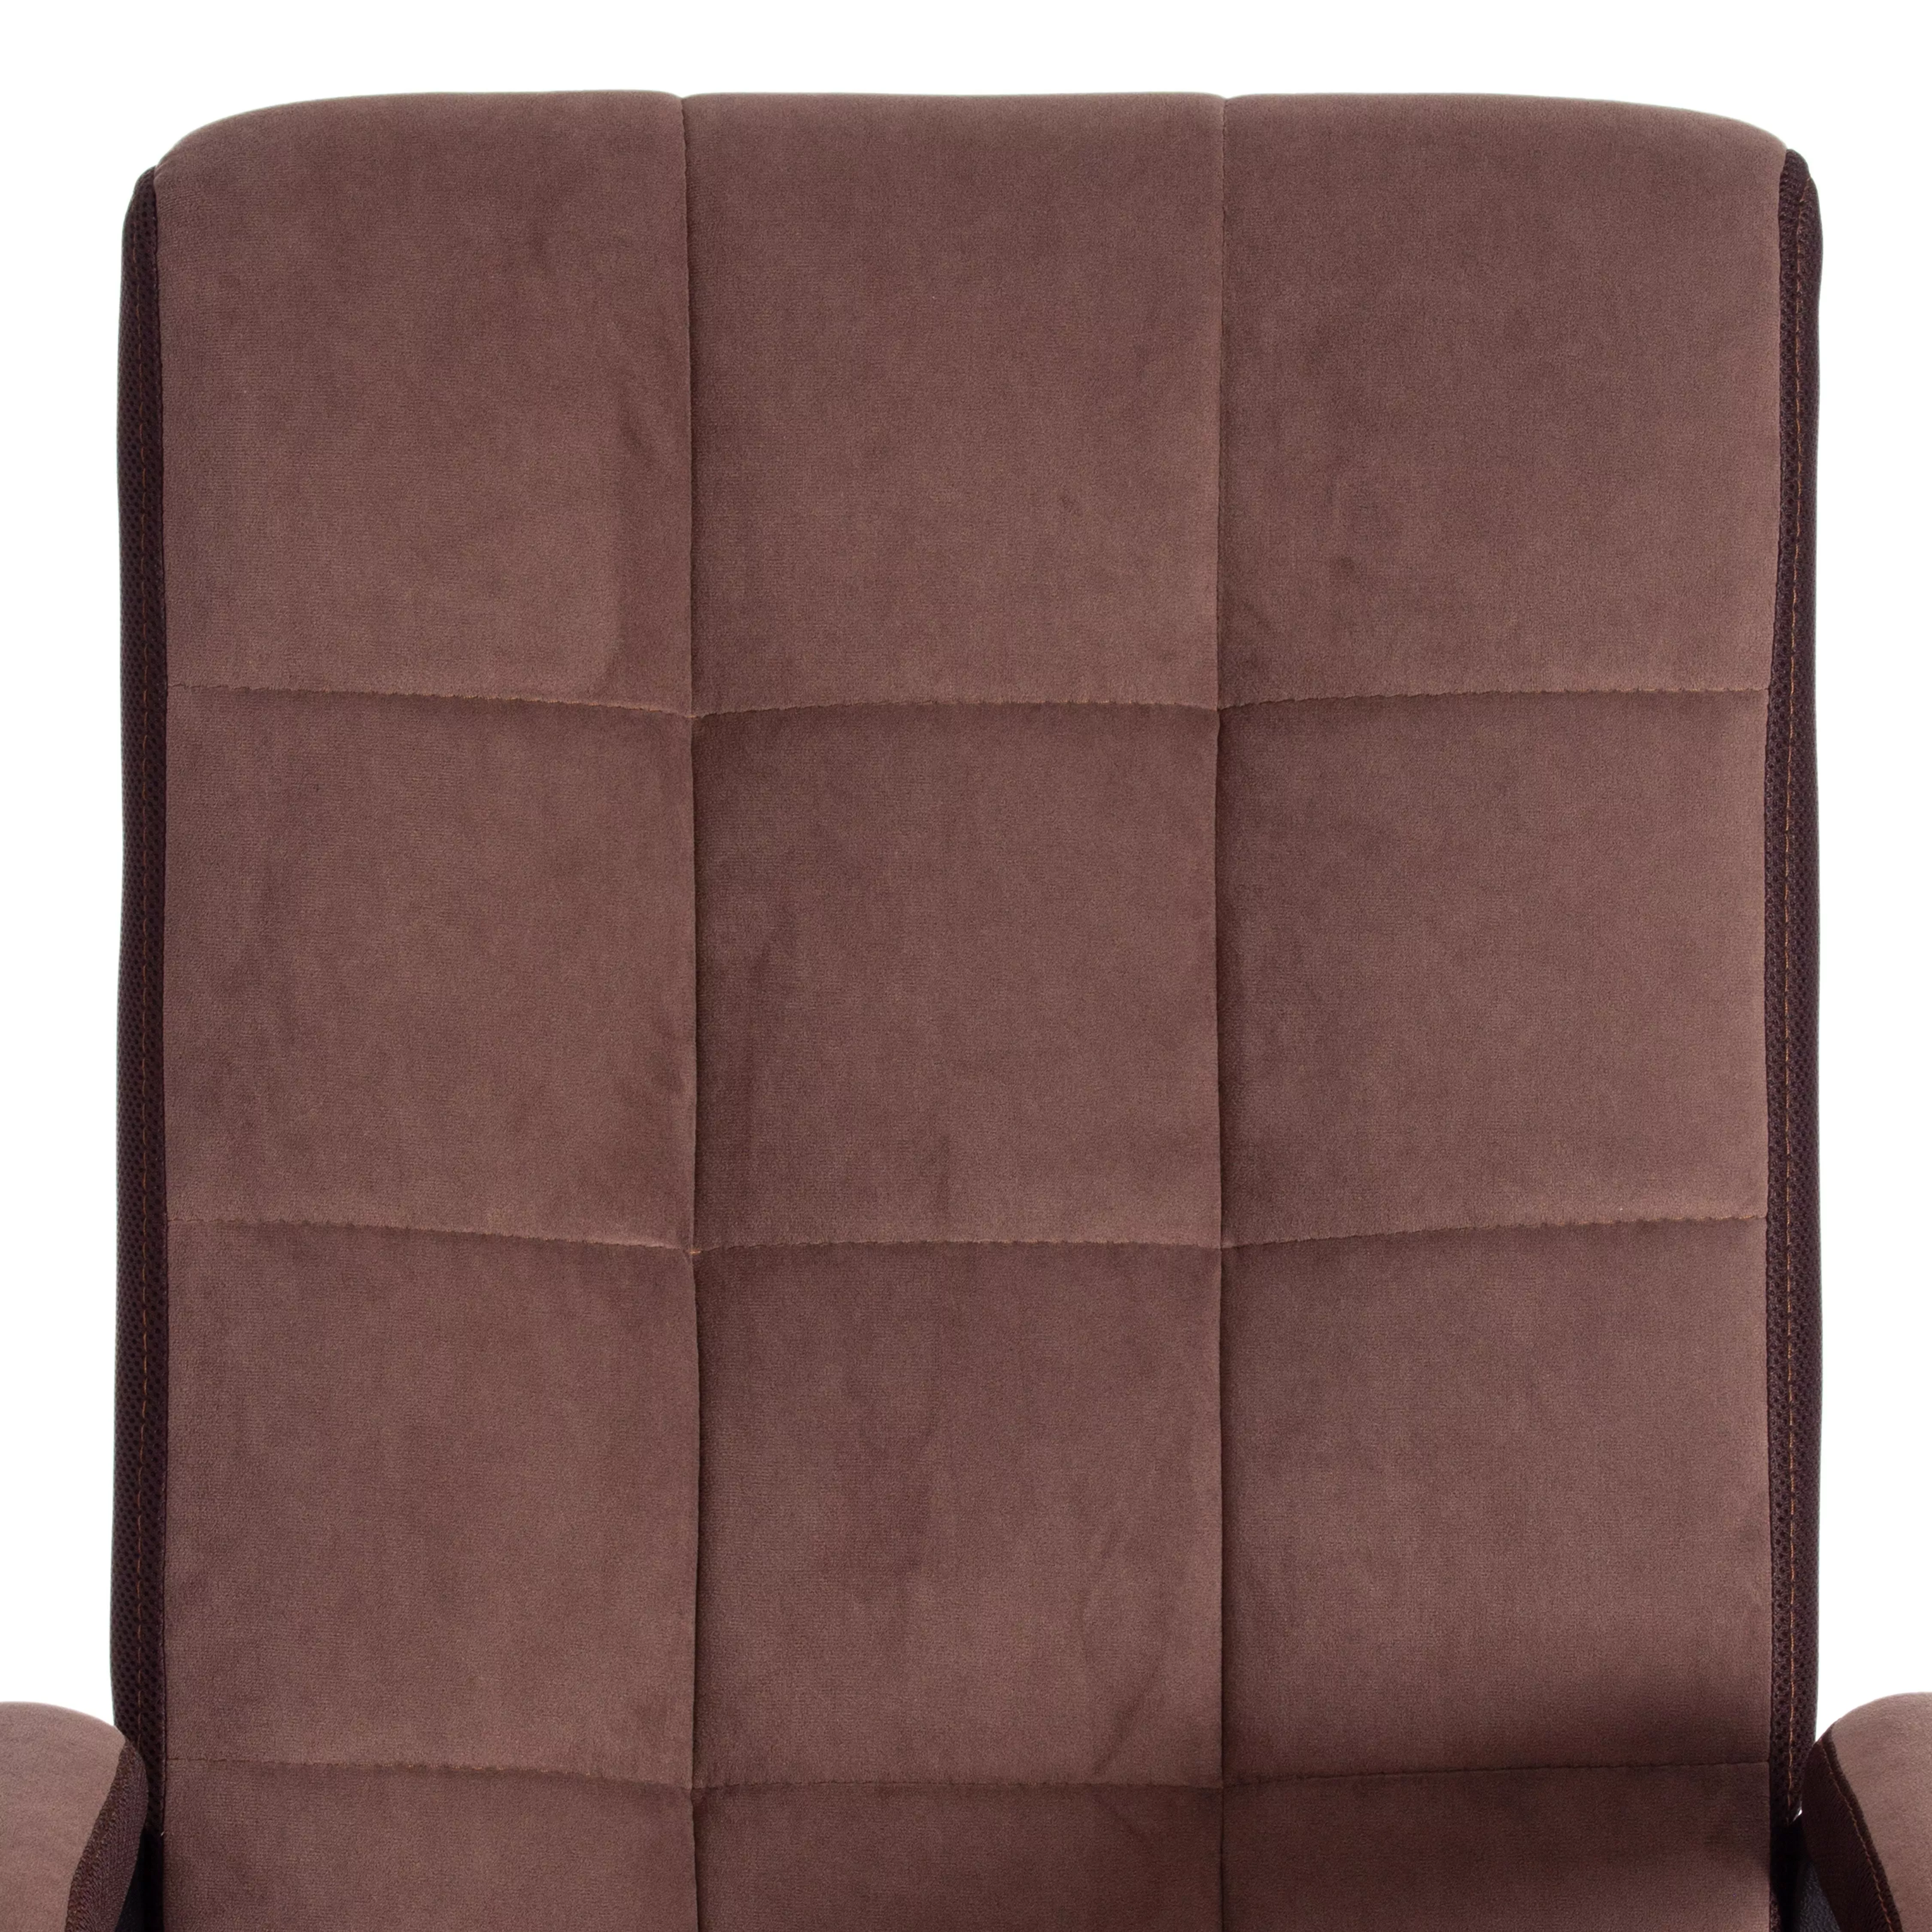 Кресло TRENDY (22) ткань коричневый